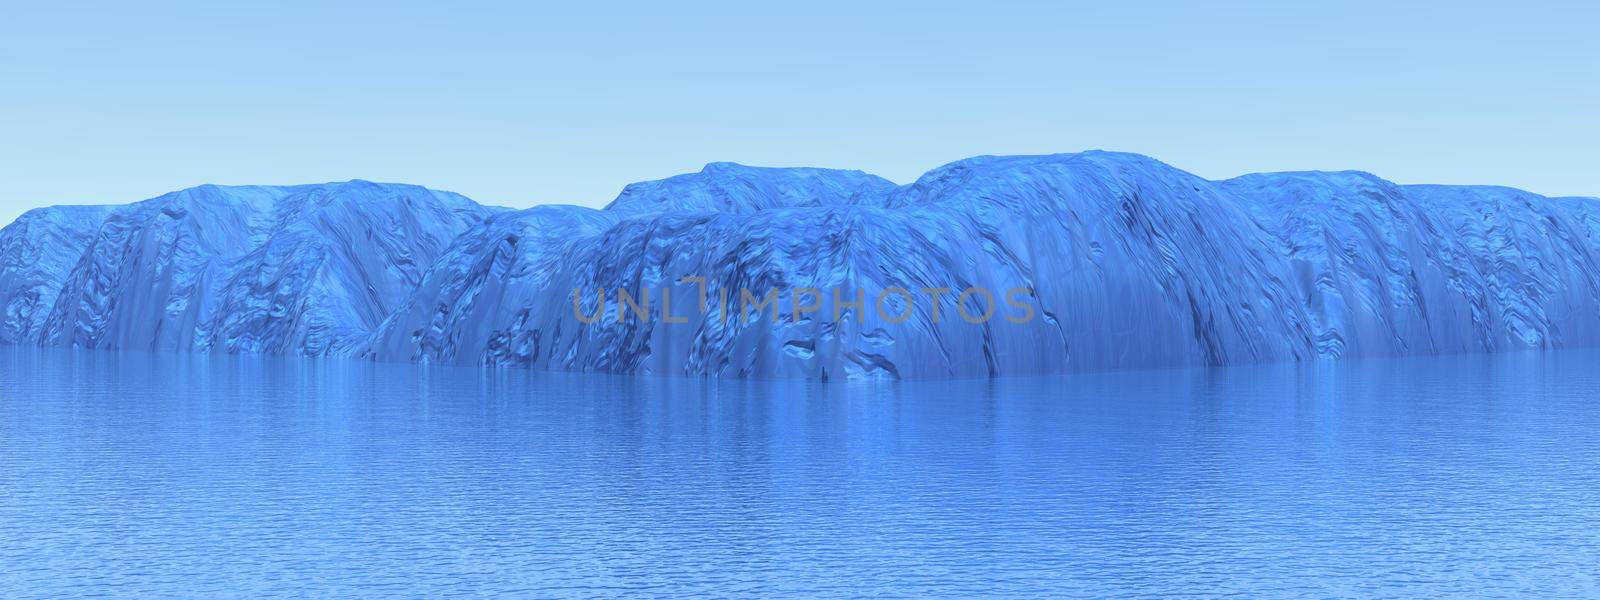 Icebergs and ocean. Peculiar landscape of the Antarctica.